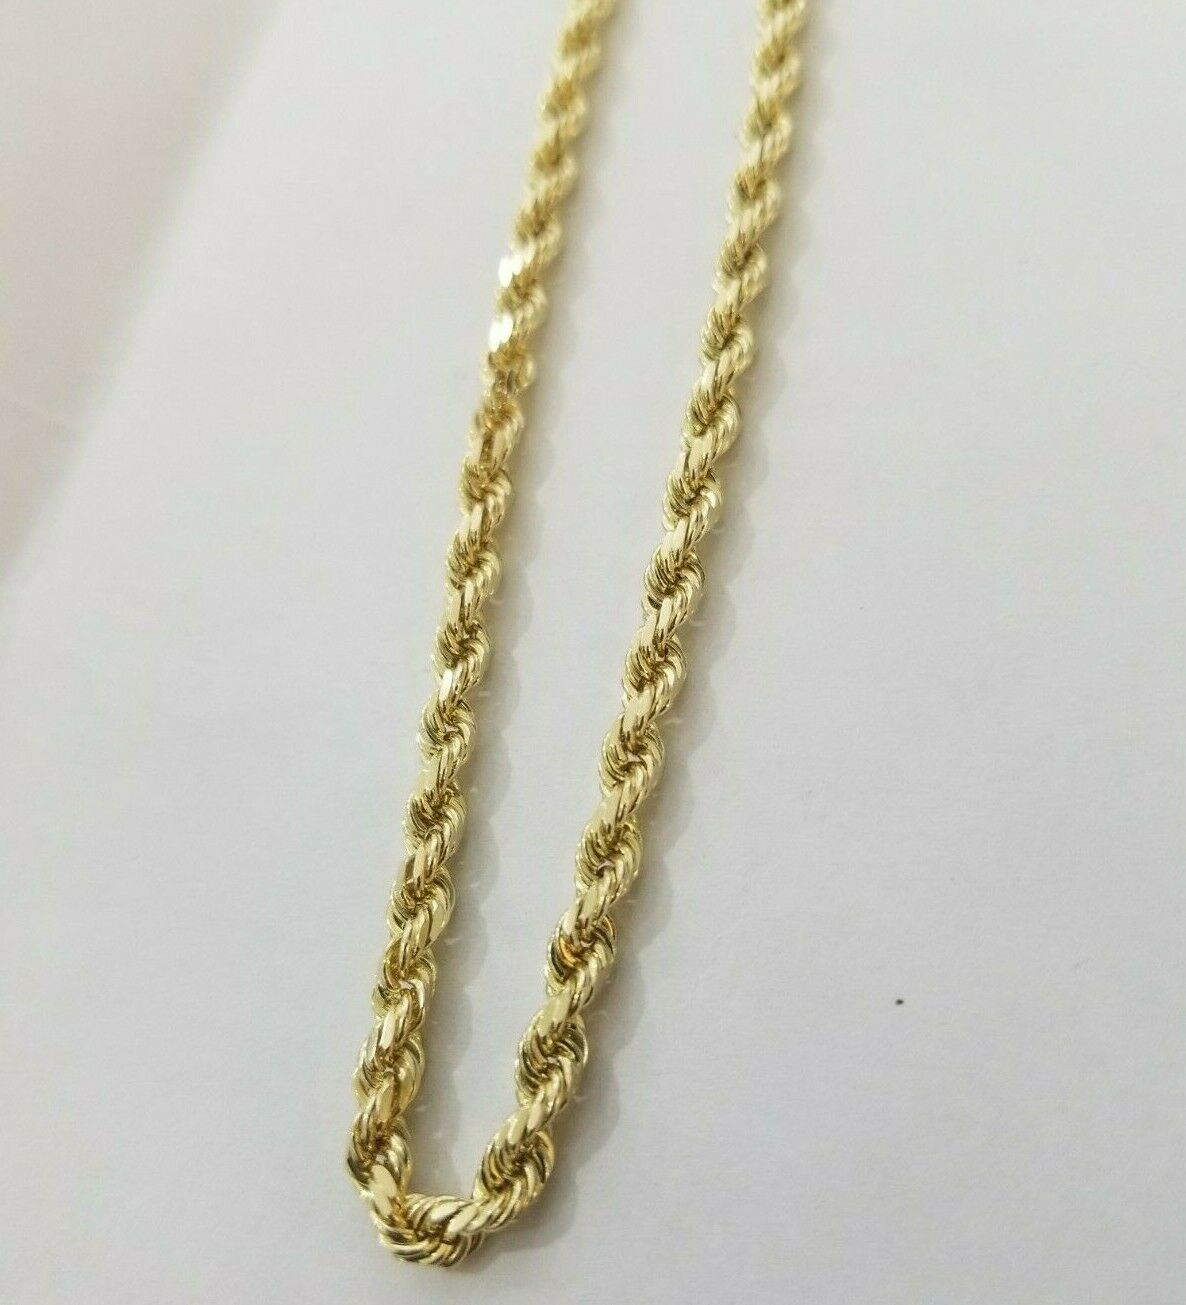 SOLID REAL Gold Rope Bracelet 8